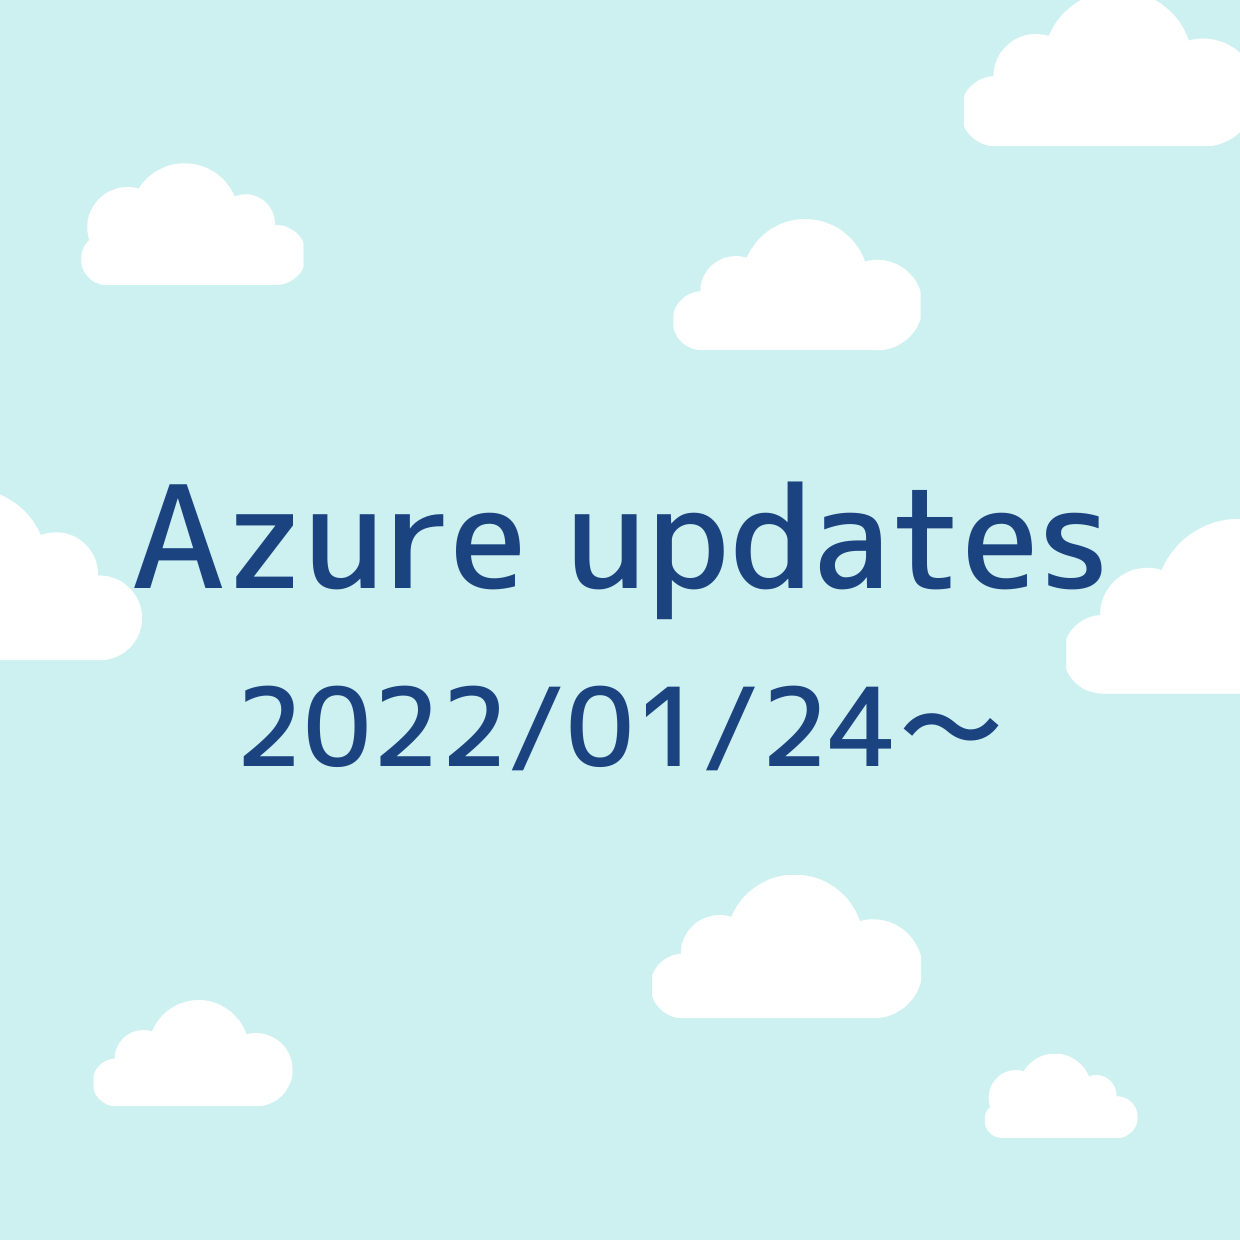 2022/01/24 週の Azure updates 日本語速報